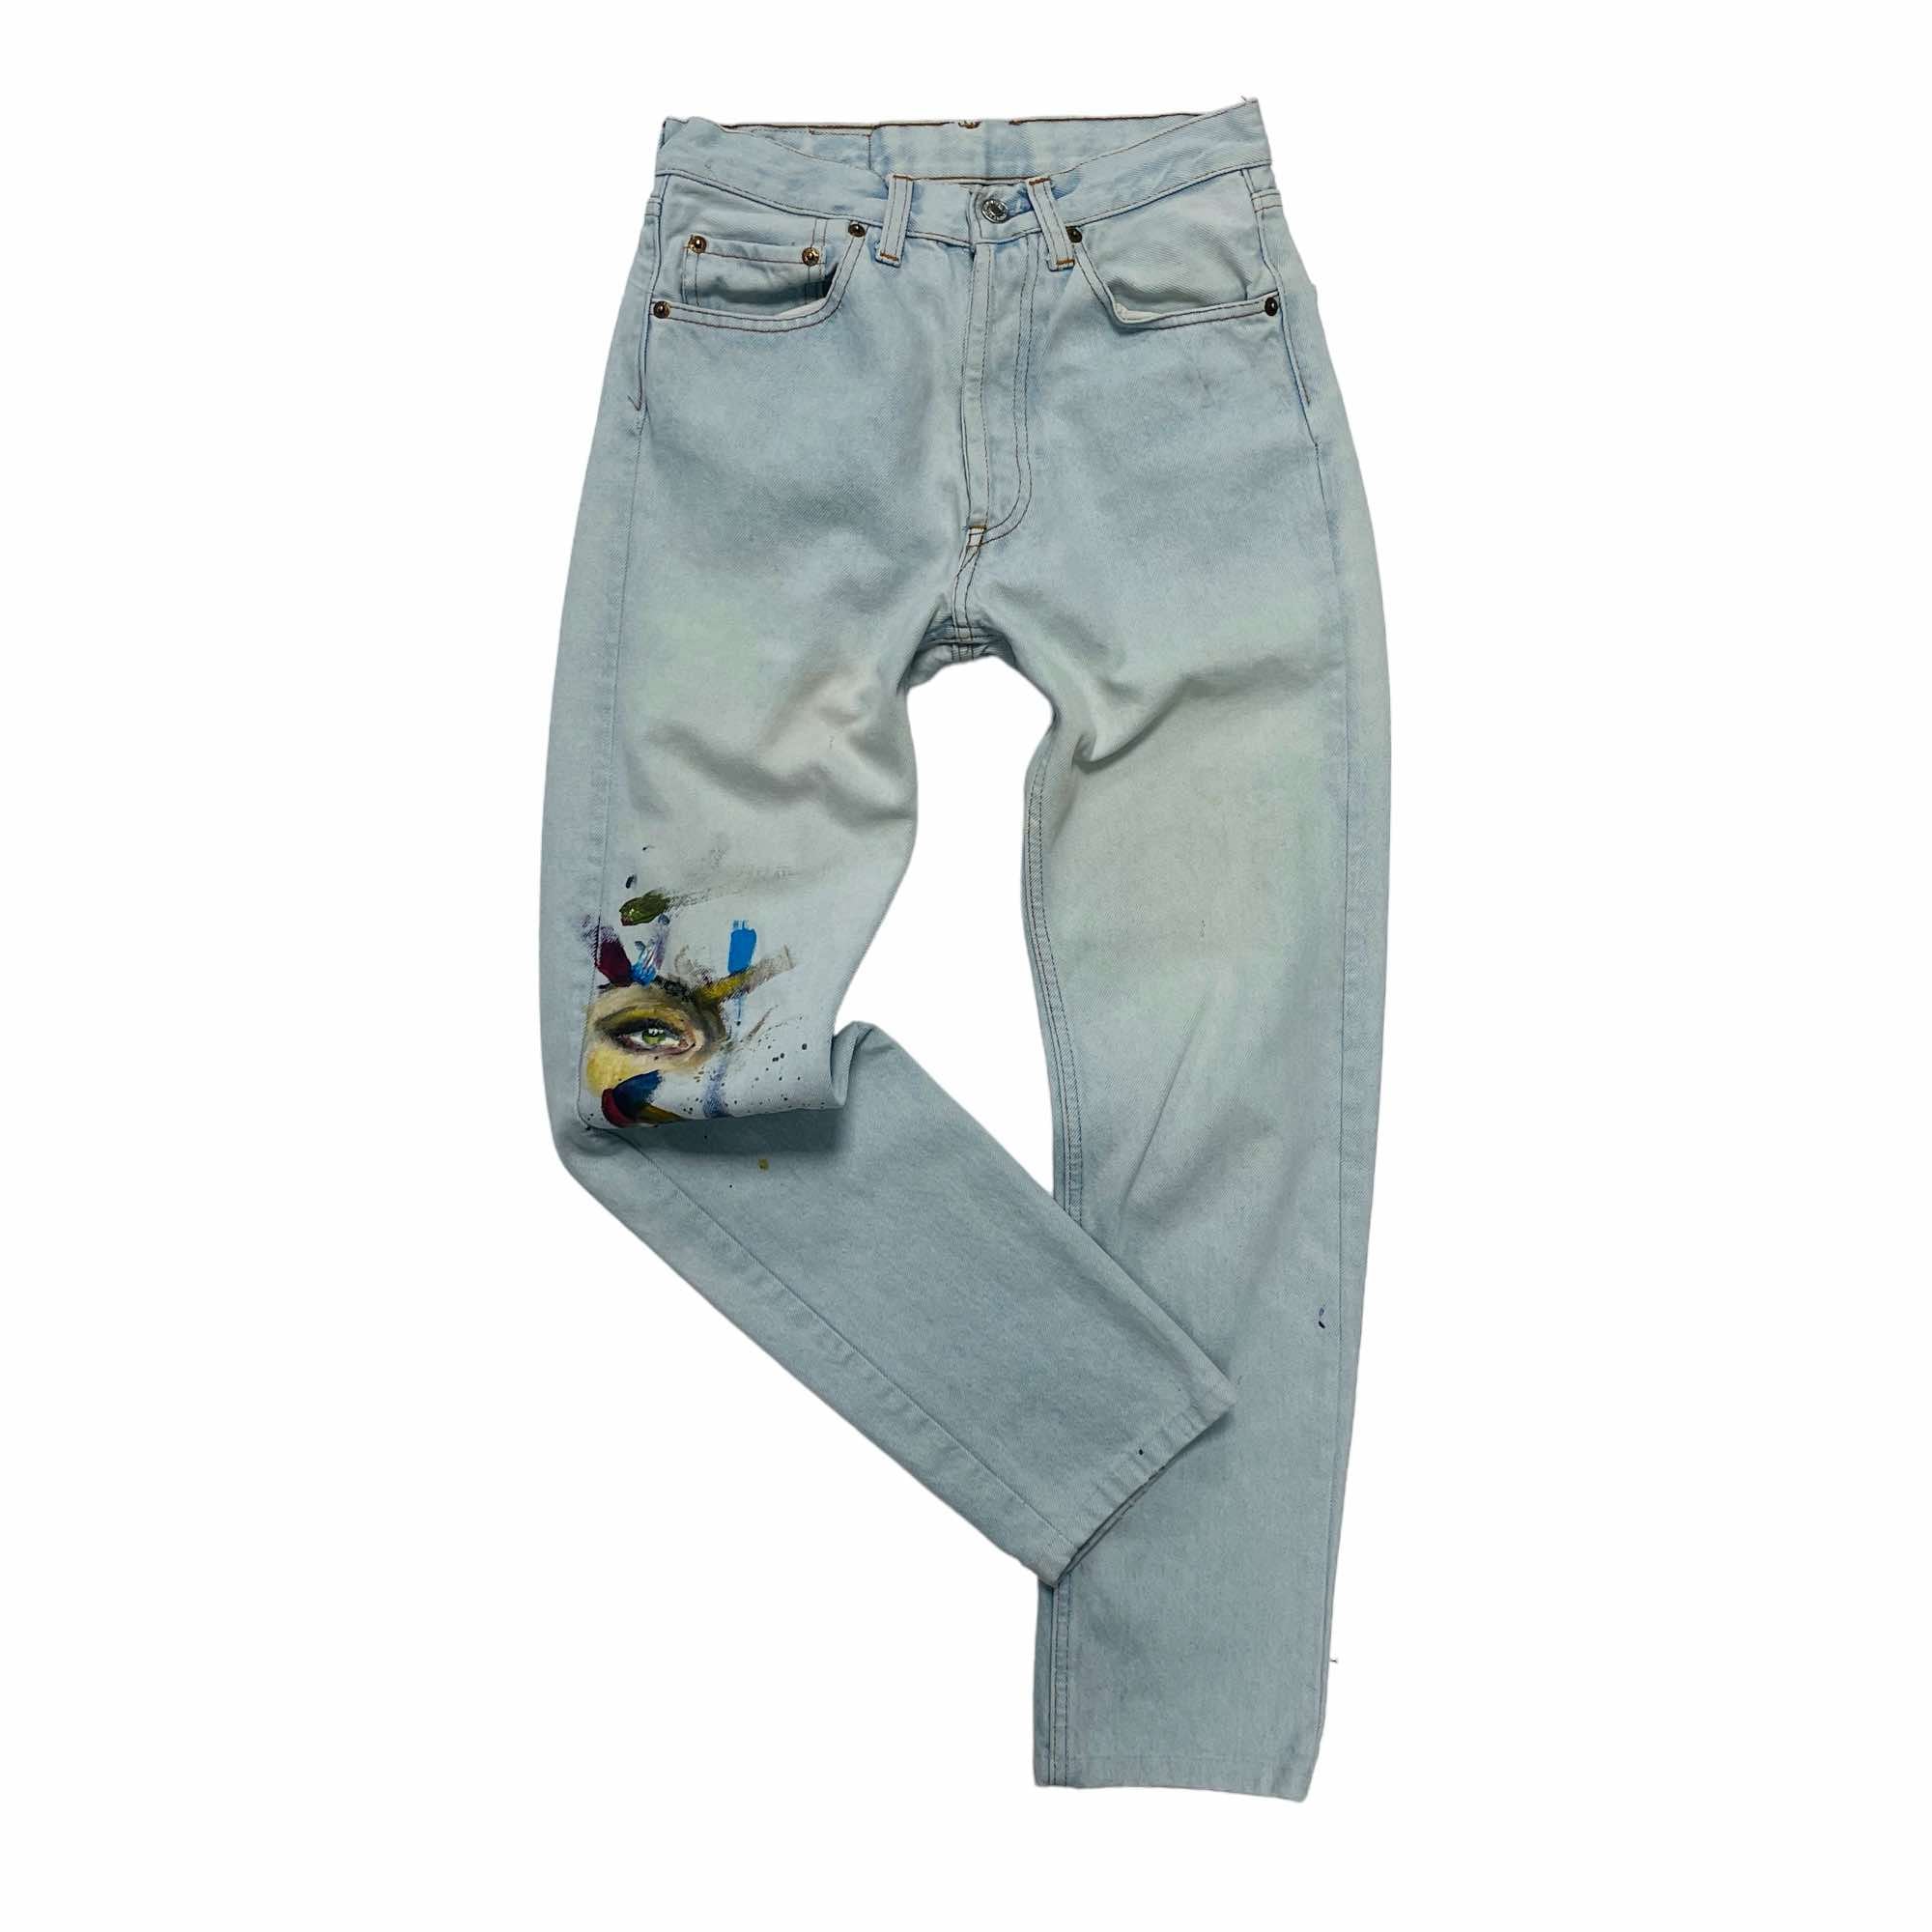 Levi's 501 Denim Jeans - W26 L36